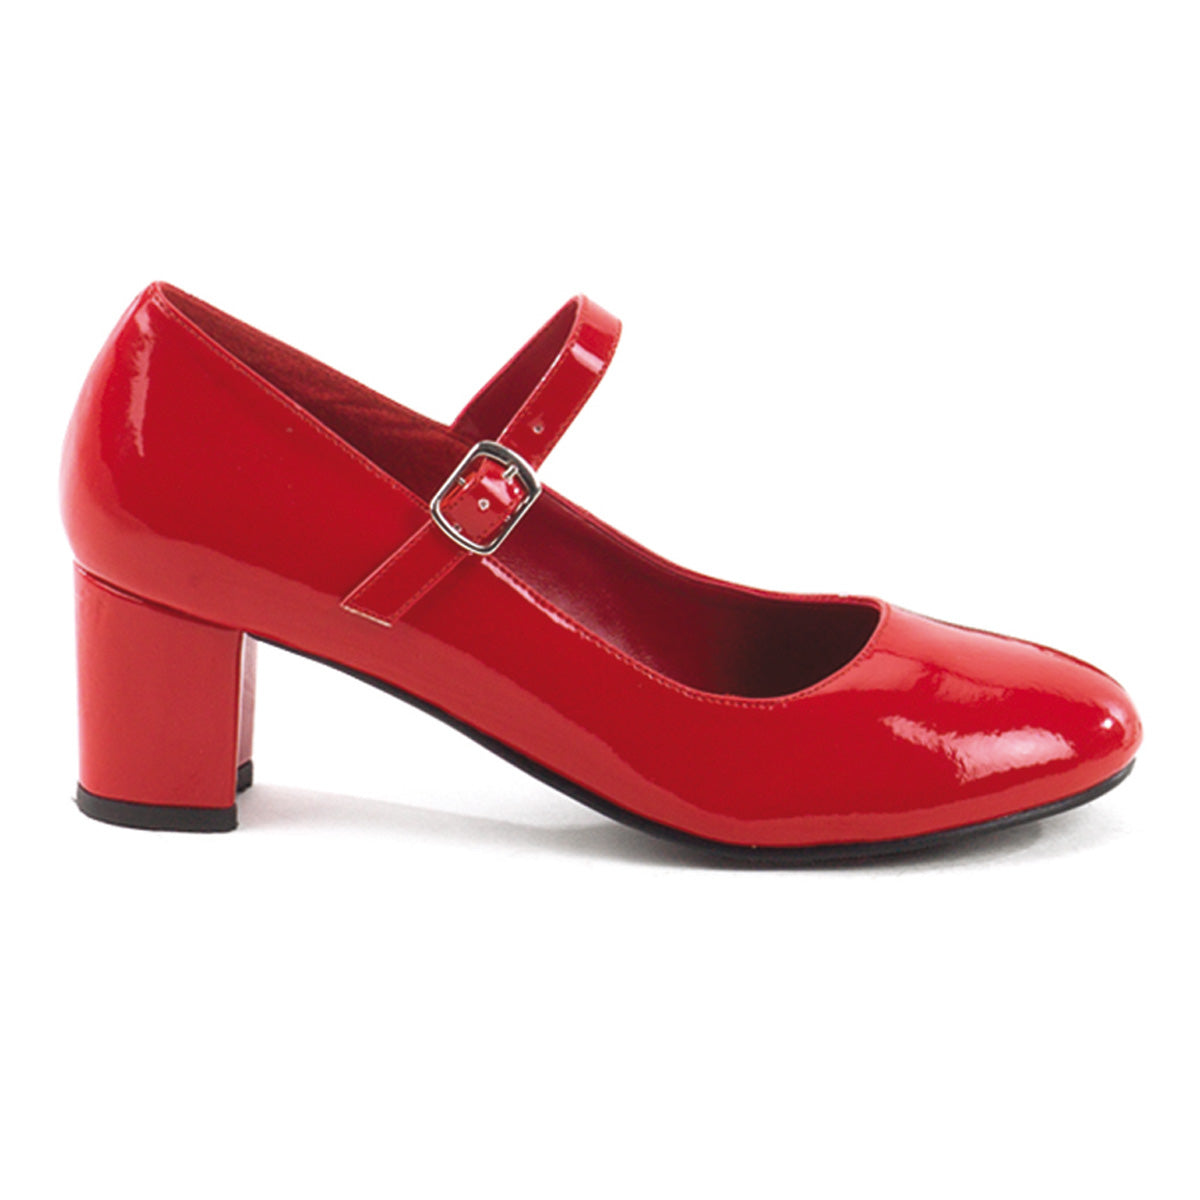 SCHOOLGIRL-50 2 Inch Heel Red Women's Costume Shoes Funtasma Costume Shoes